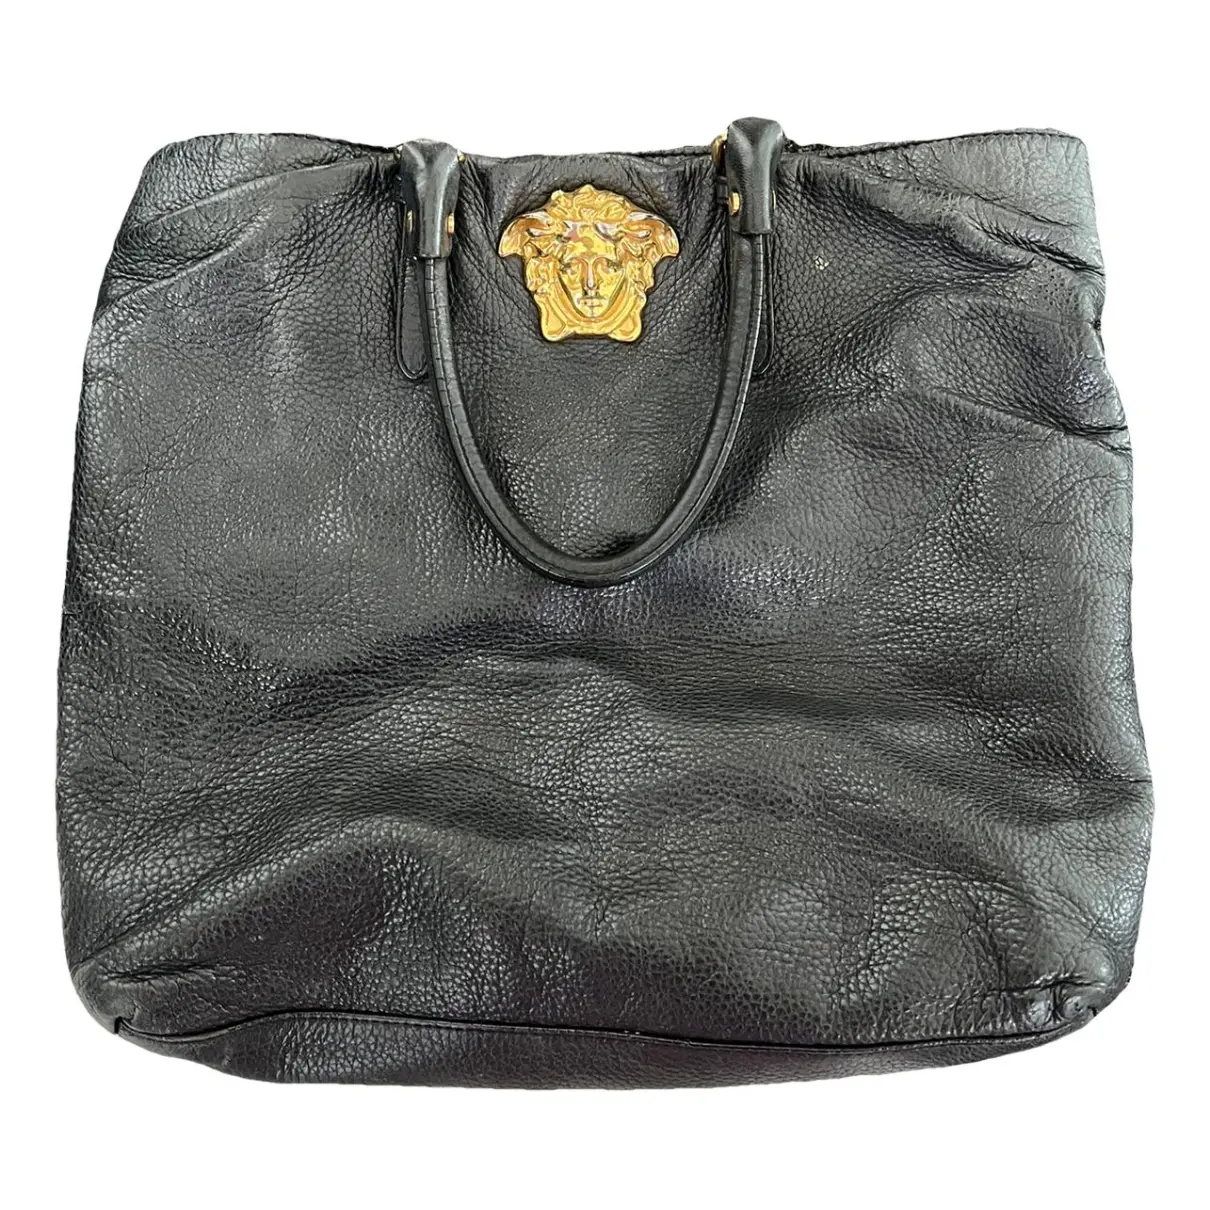 La Medusa leather handbag Versace